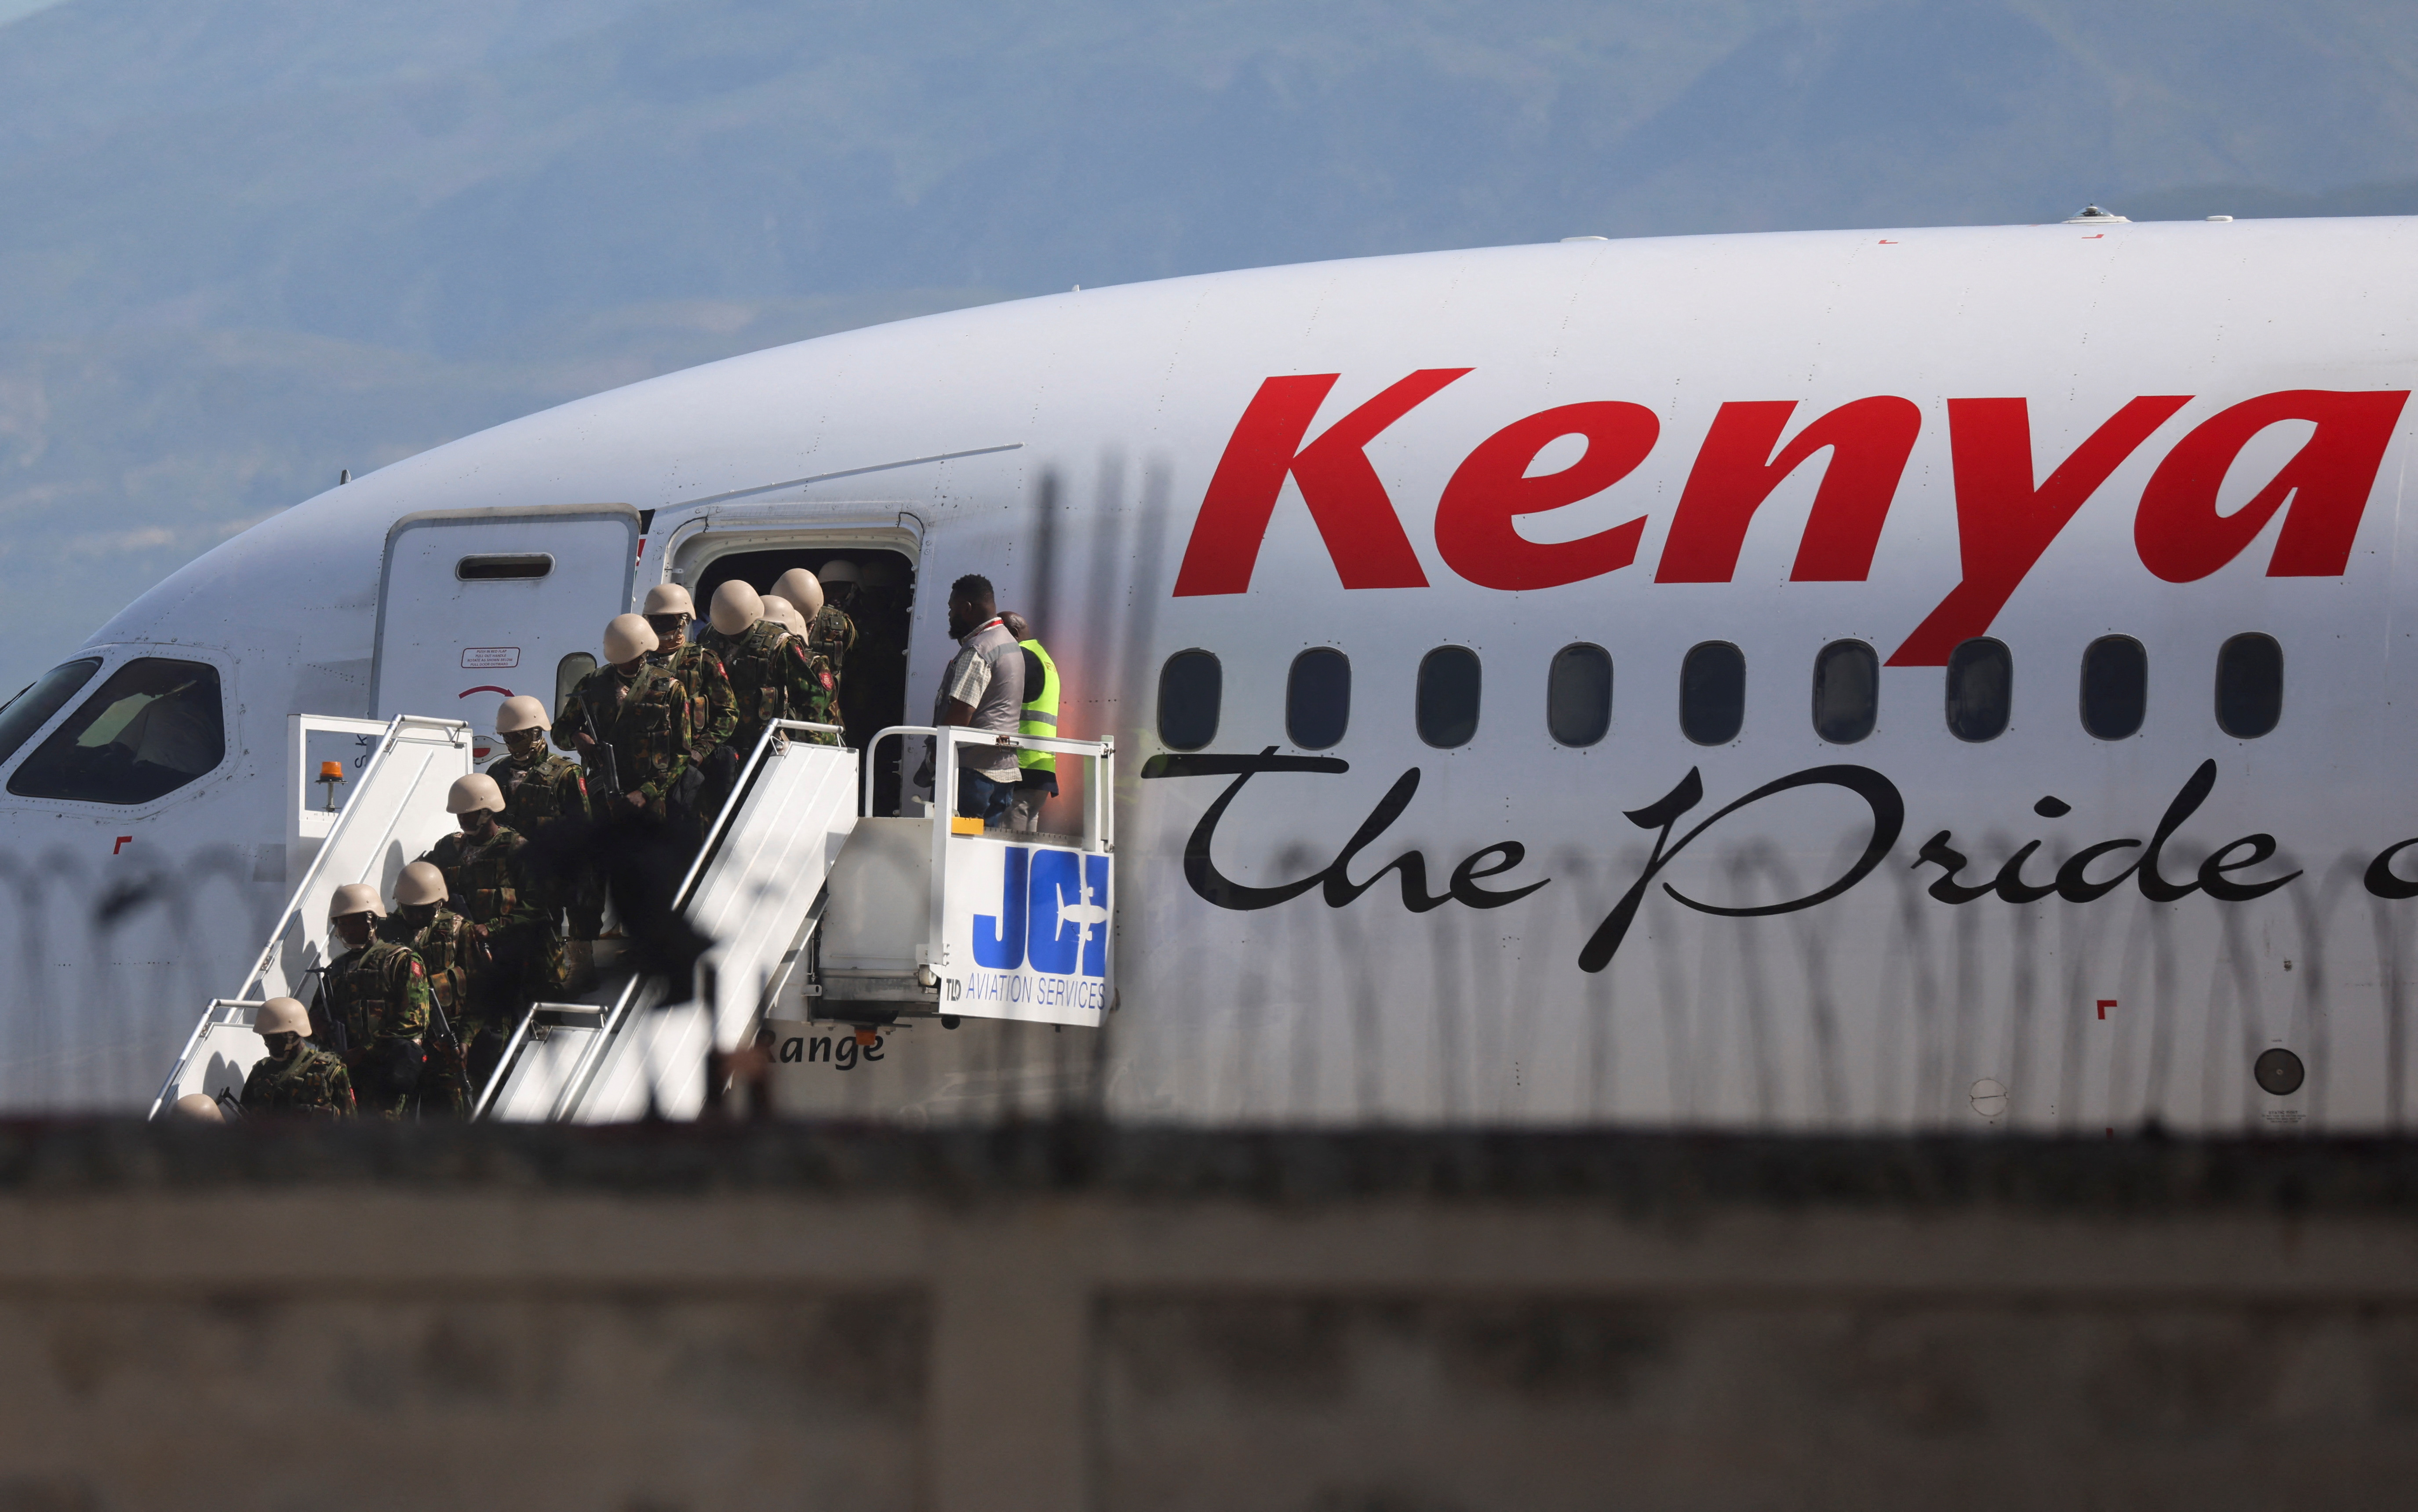 Η αστυνομία της Κένυας αρχίζει να φτάνει στην πρωτεύουσα της Αϊτής καθώς ξεκινά η αποστολή ασφαλείας